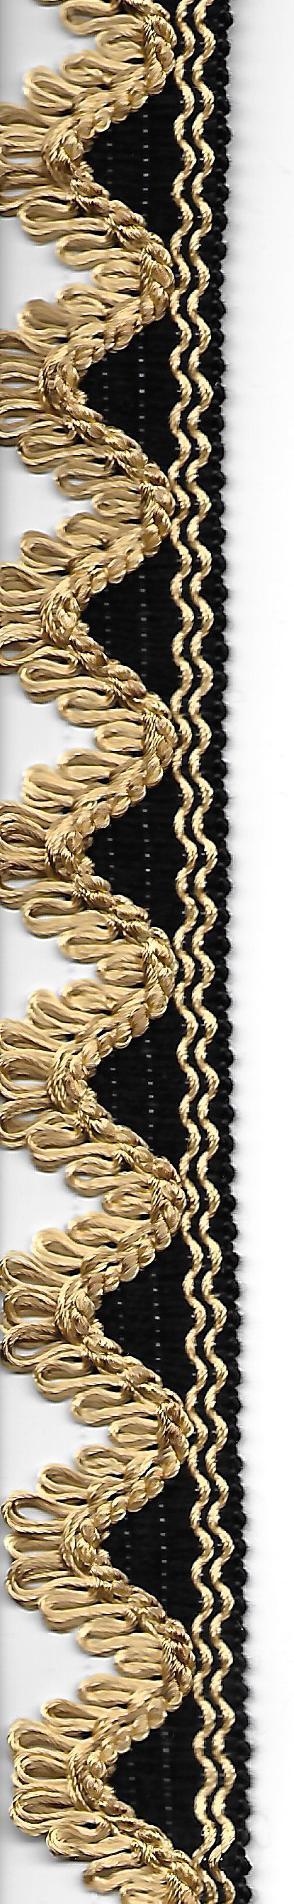 Baumwolle Spitzenband schwarz mit goldiger Welle